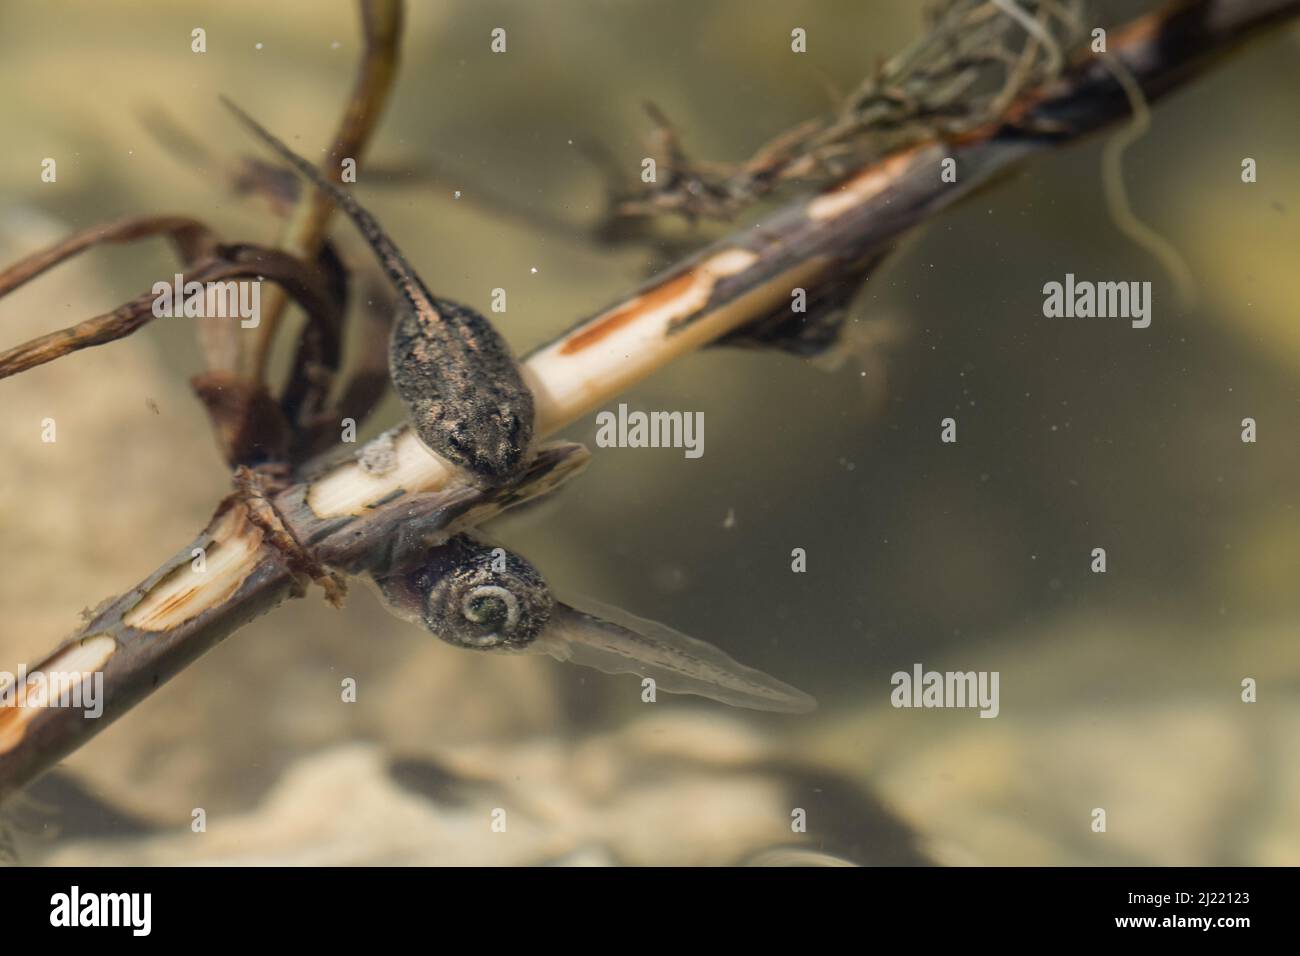 Un paio di tadpoli di rana dipinta nel Mediterraneo, Discoglossus pictus, che si nutrono di bastone in un laghetto poco profondo di acqua dolce nella campagna maltese. Foto Stock